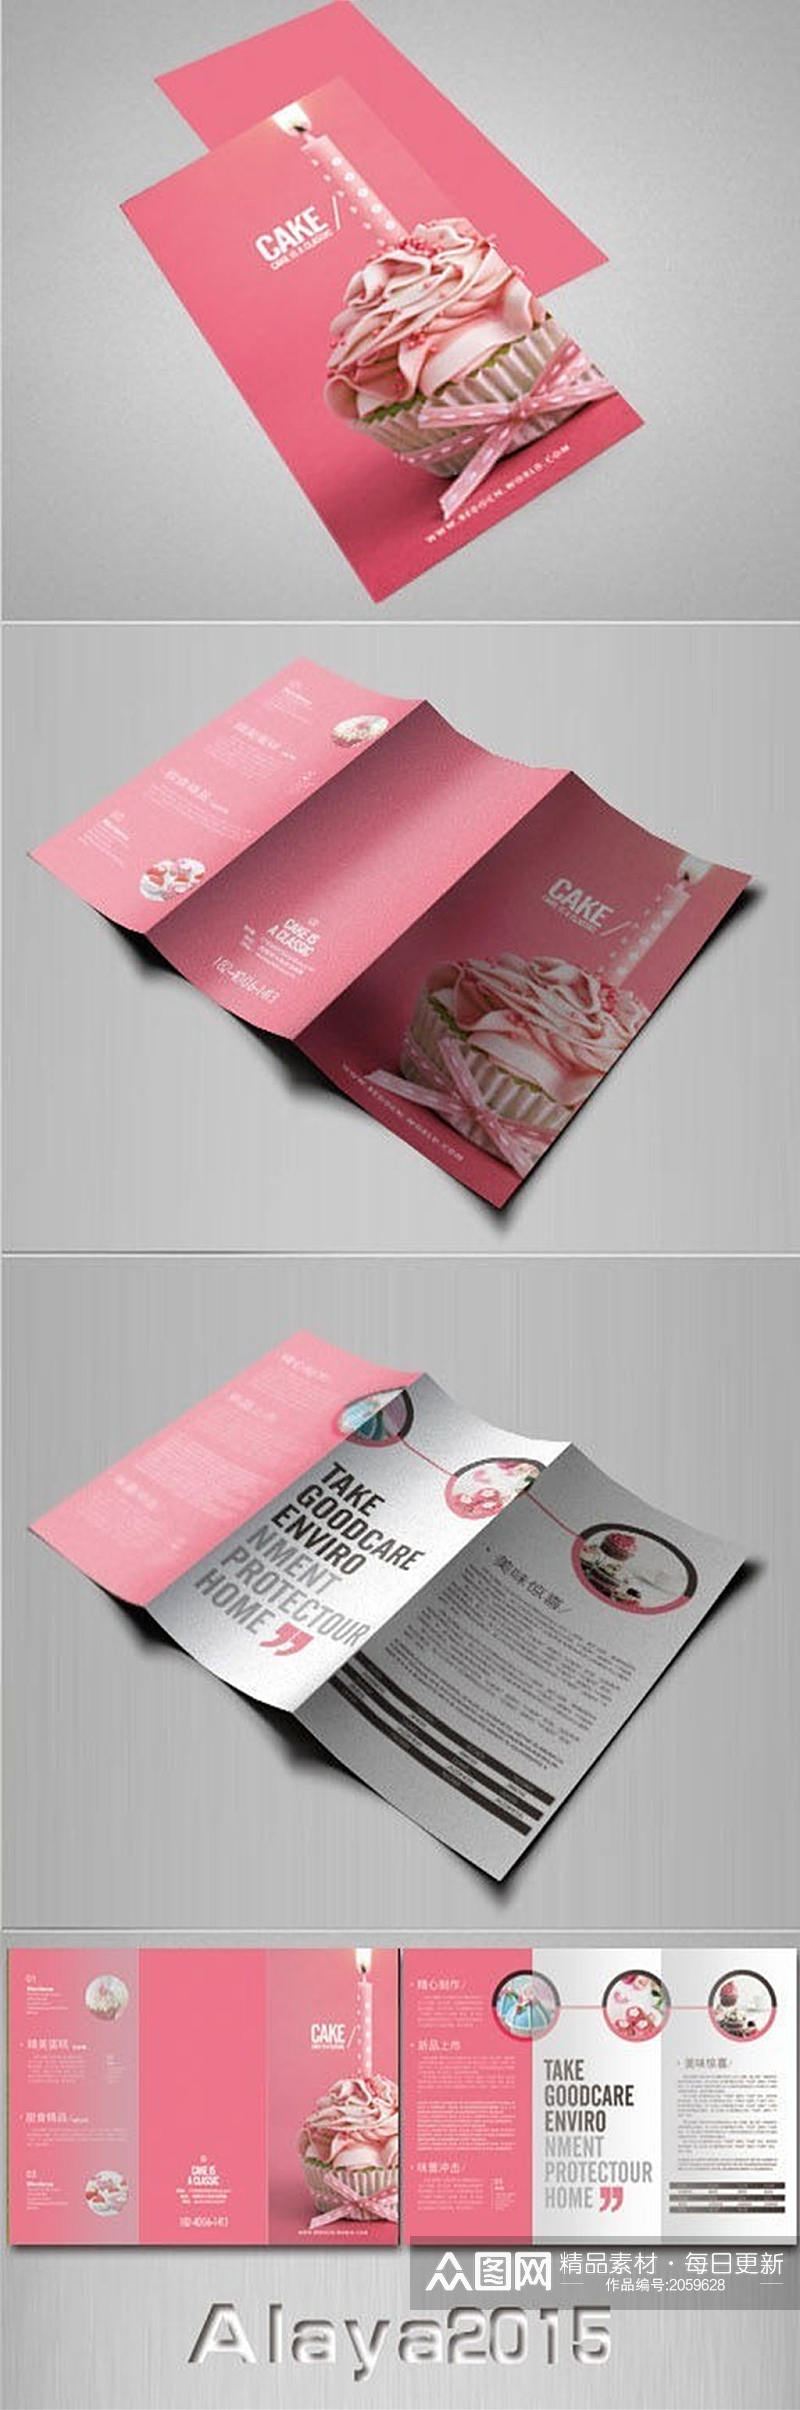 粉色婚礼蛋糕宣传折页设计素材